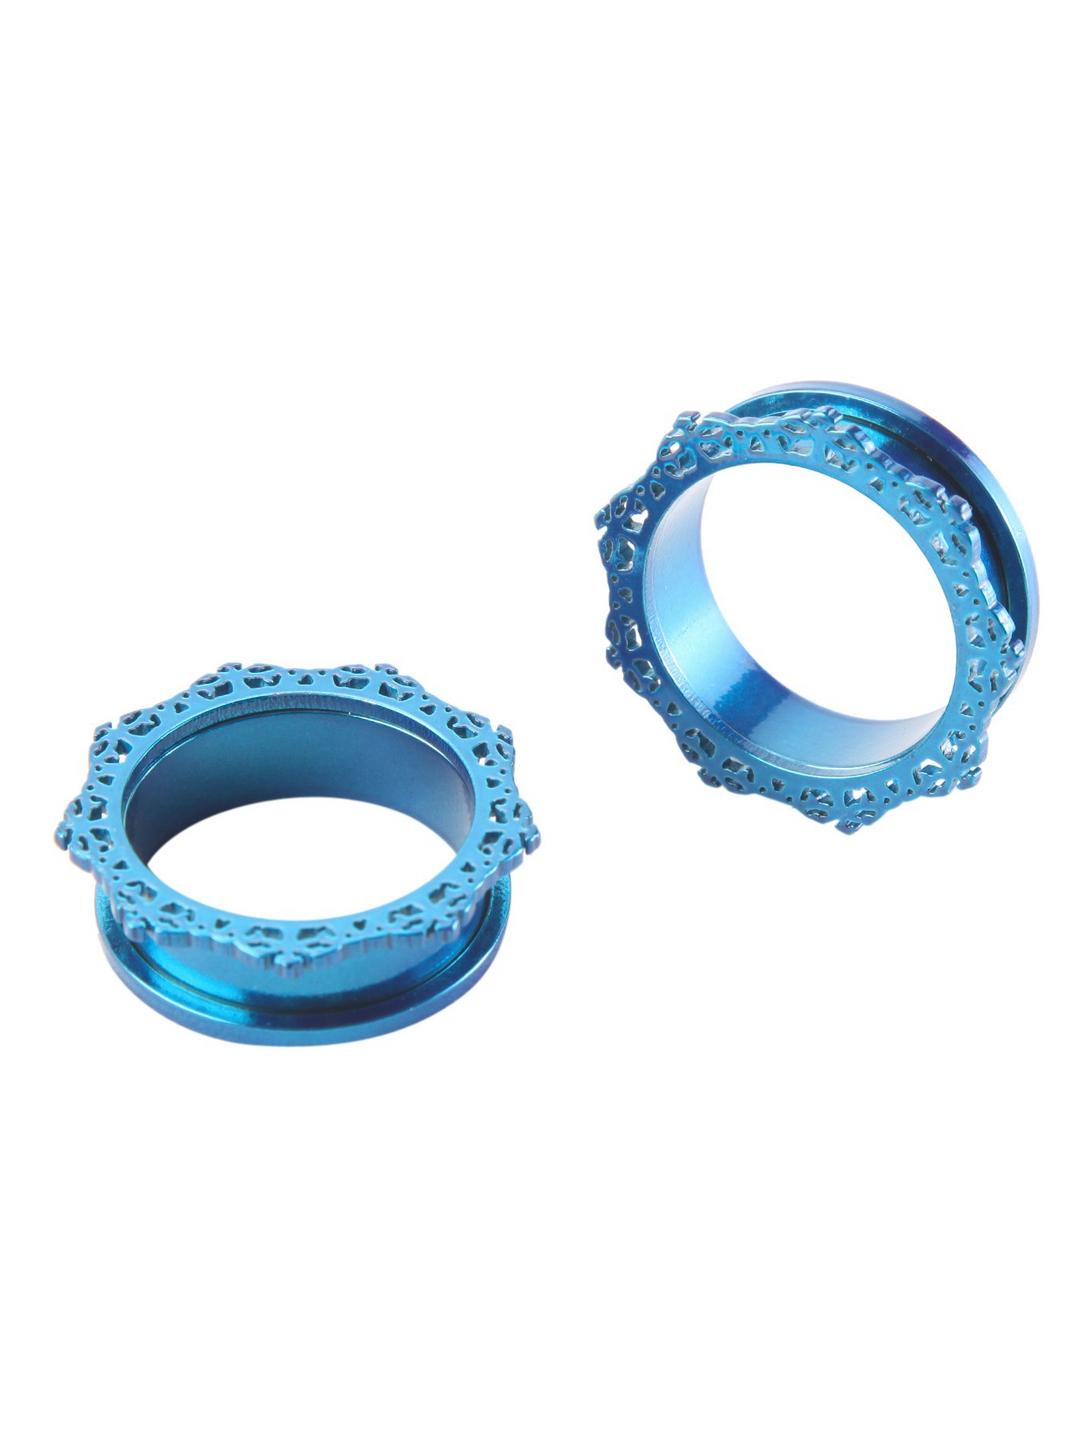 Steel Blue Filigree Spool Plug 2 Pack, BLUE, hi-res